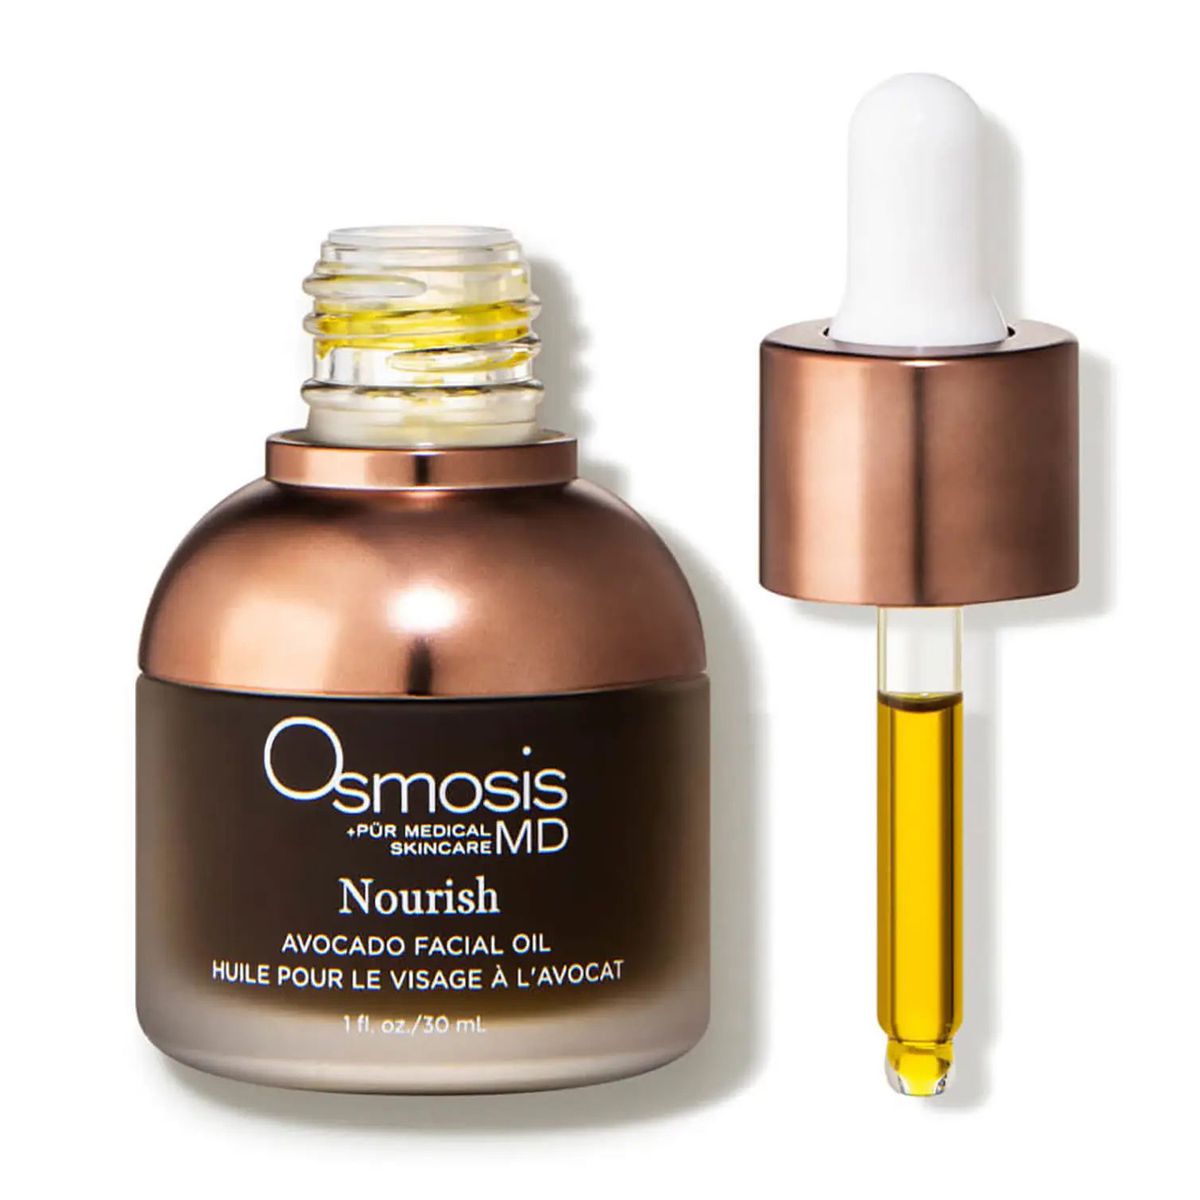 Osmosis Beauty Nourish Avocado Facial Oil